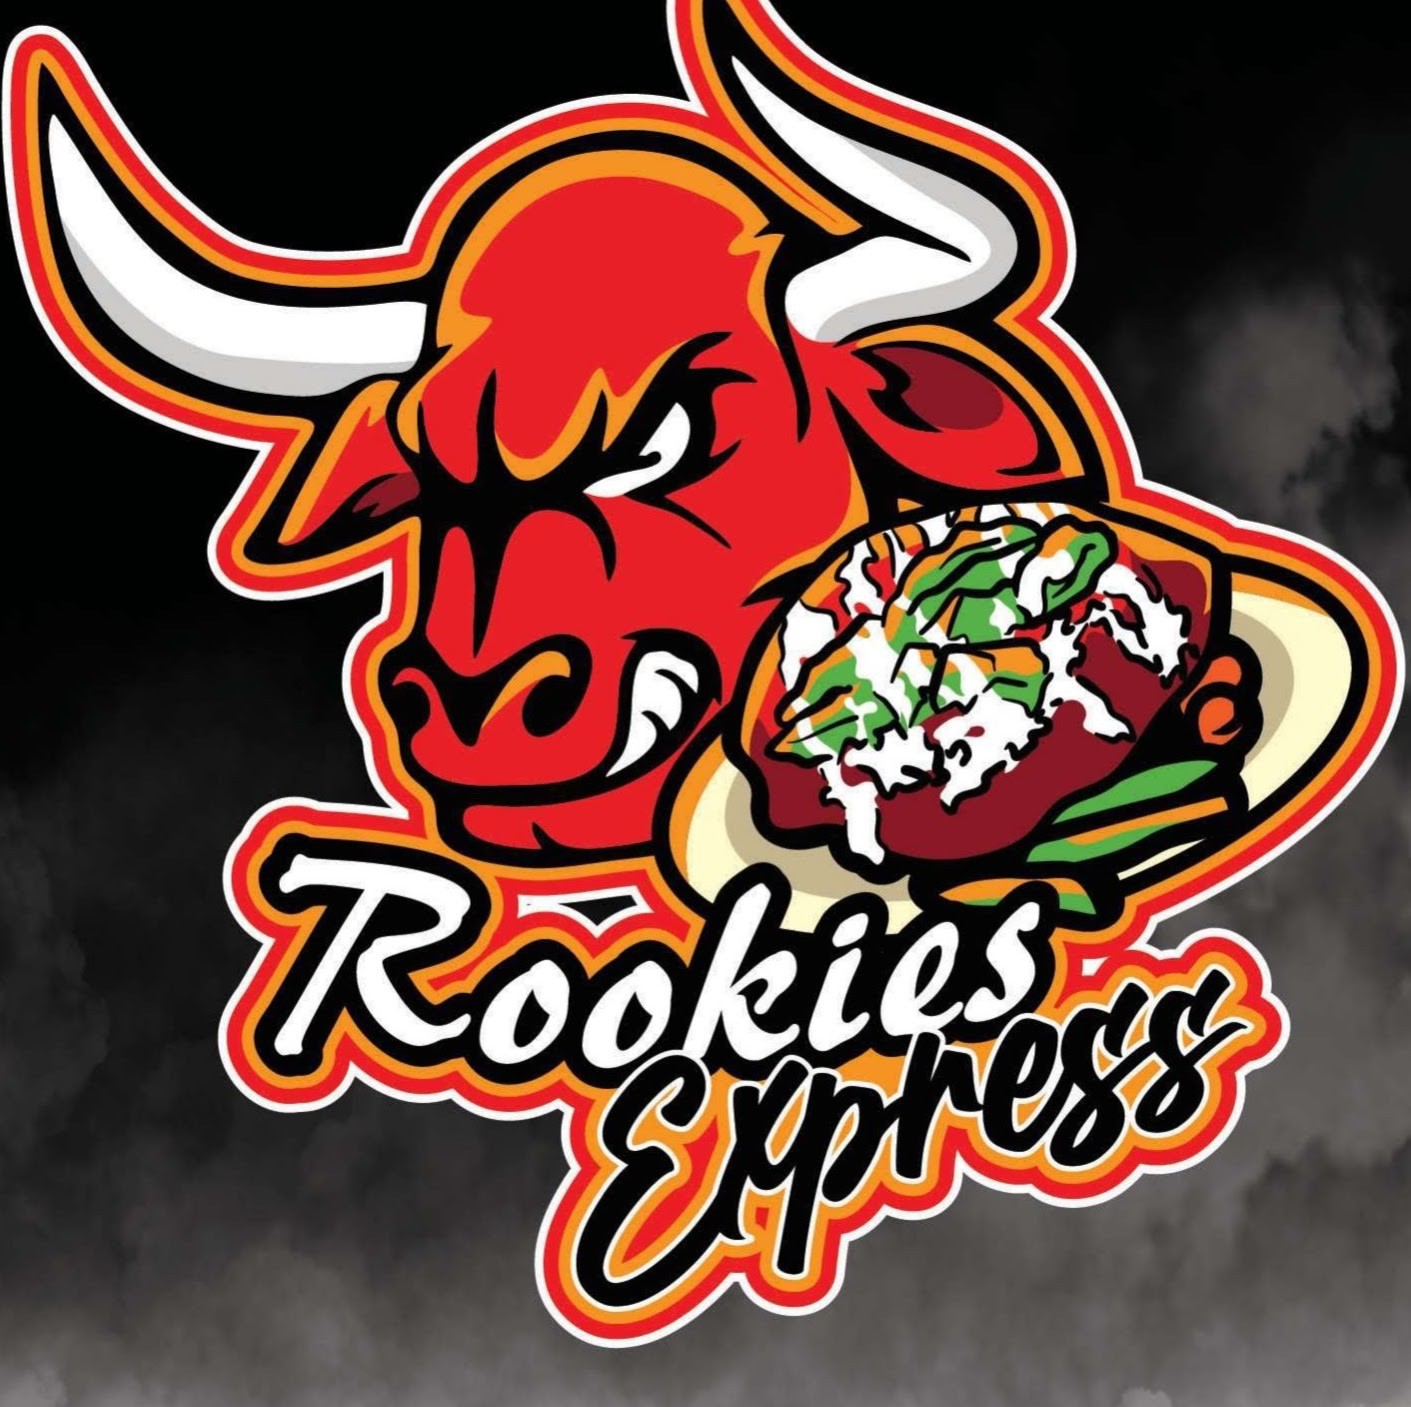 Rookies Express Logo